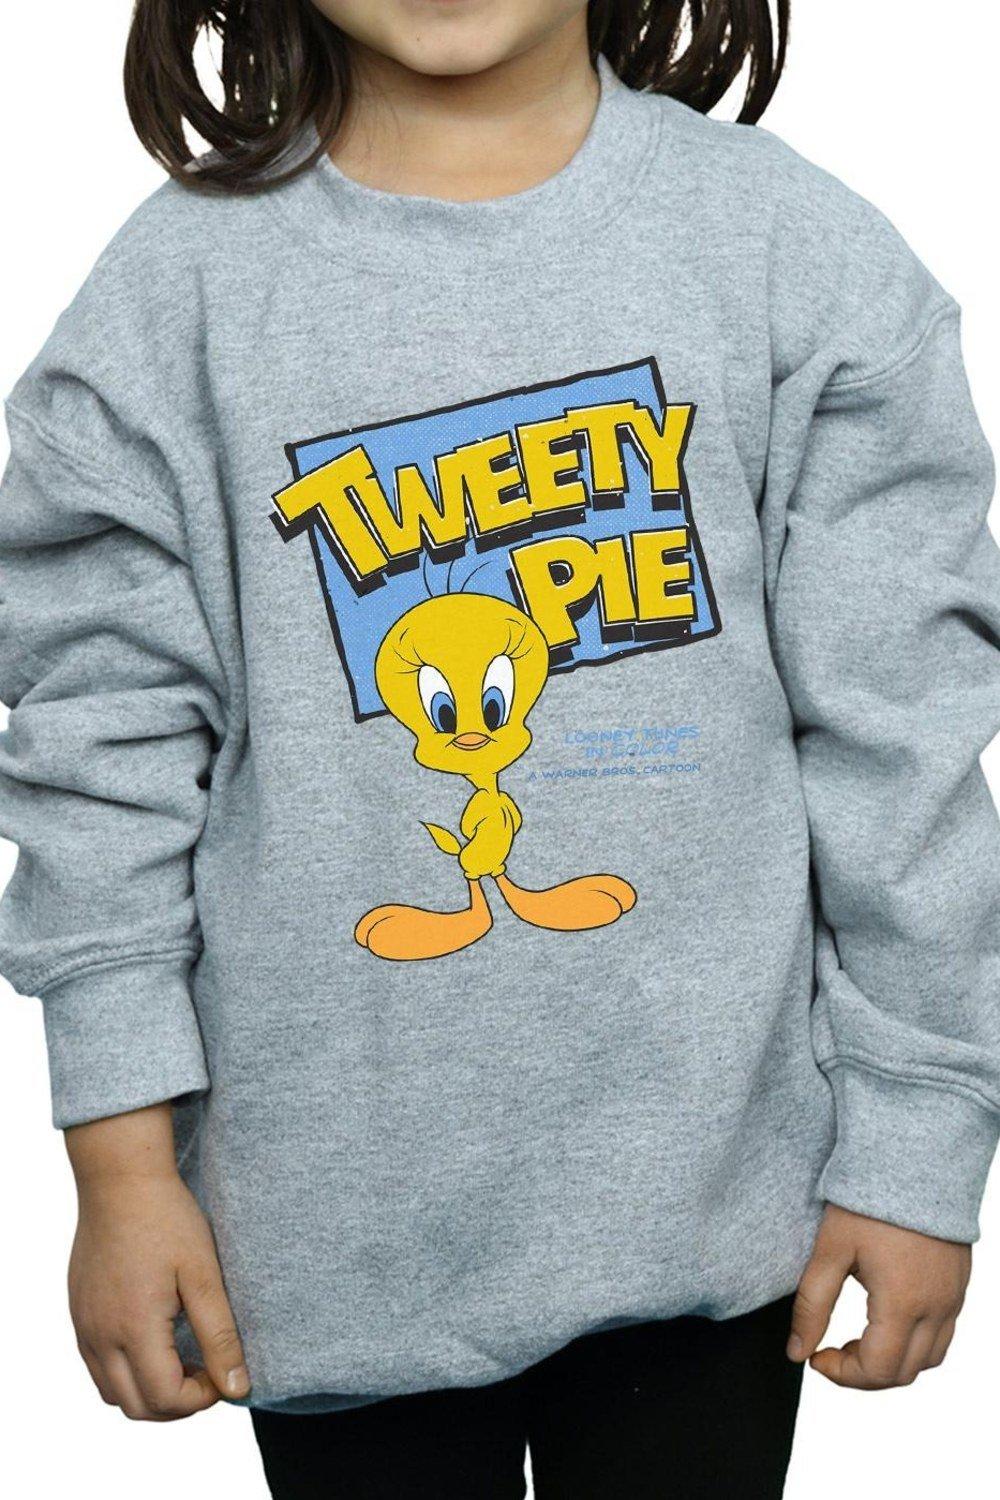 Classic Tweety Sweatshirt